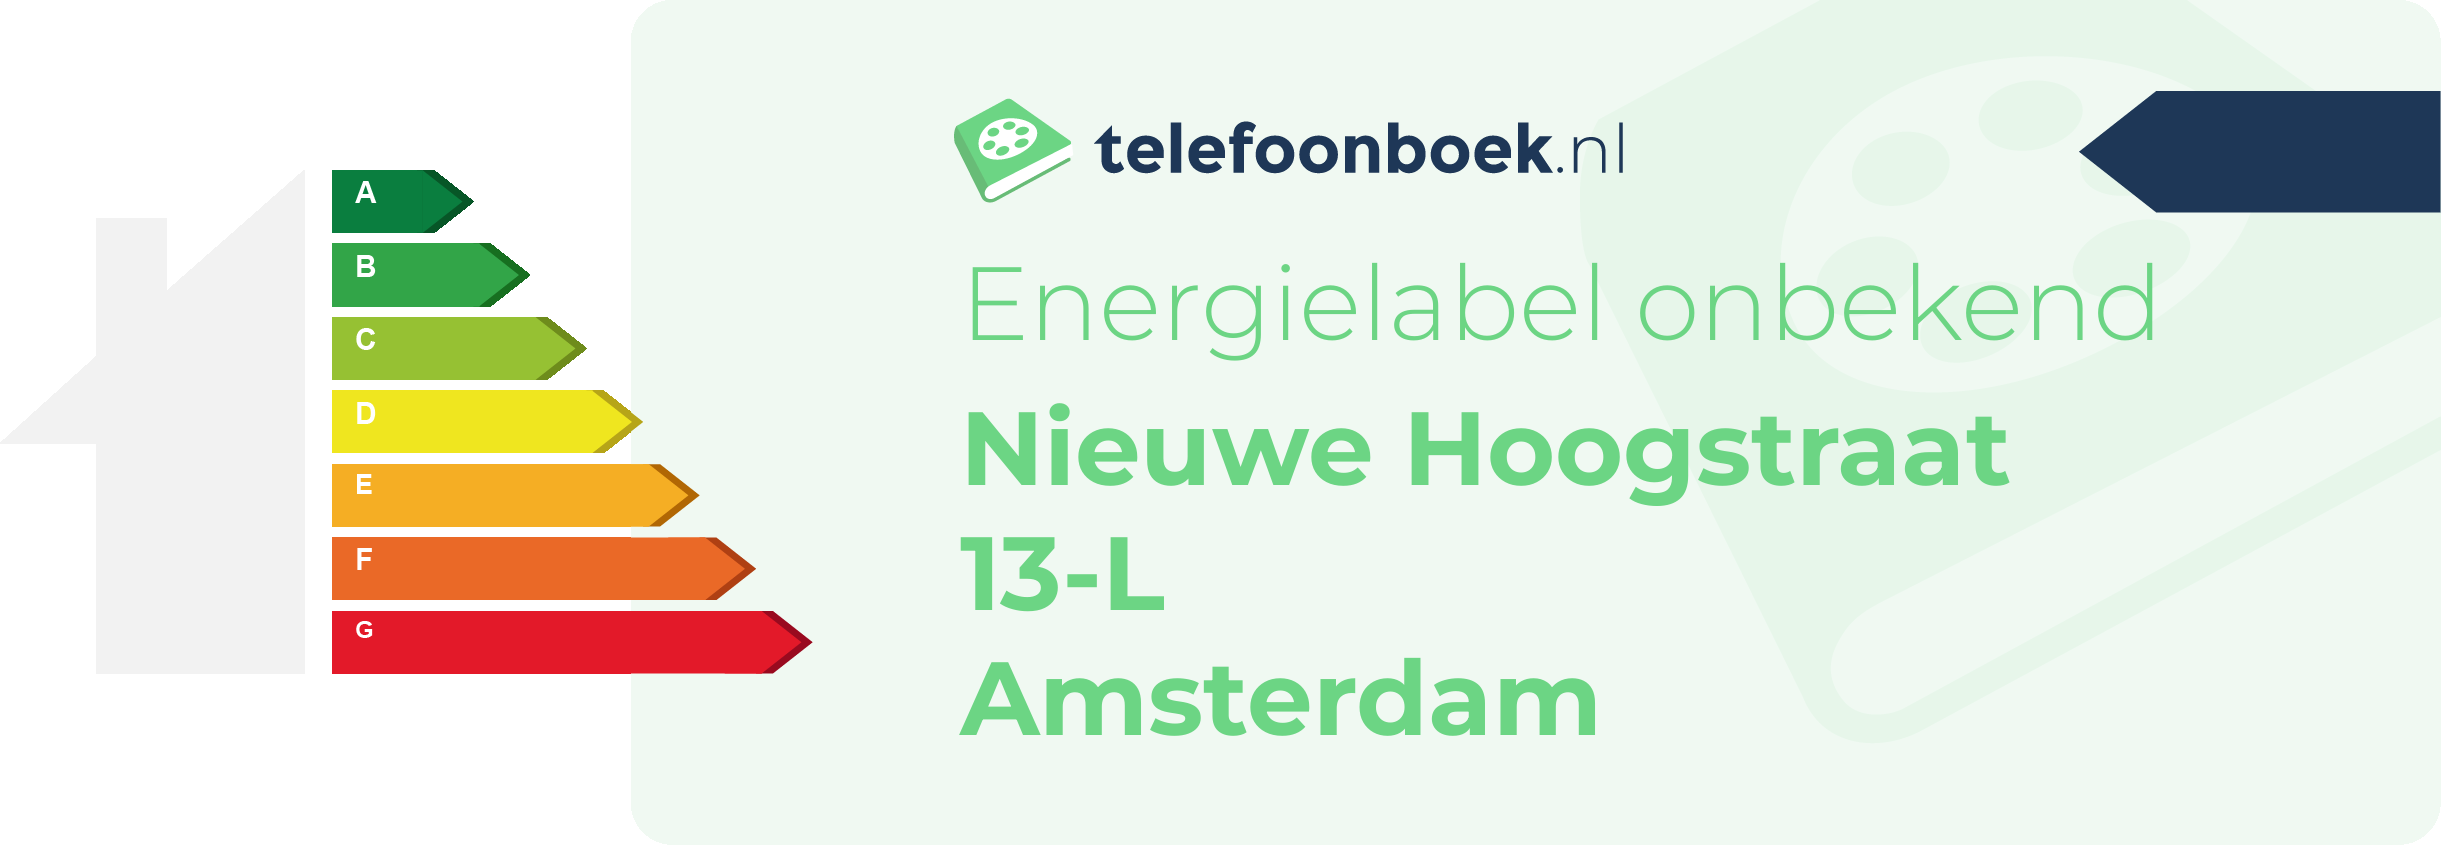 Energielabel Nieuwe Hoogstraat 13-L Amsterdam